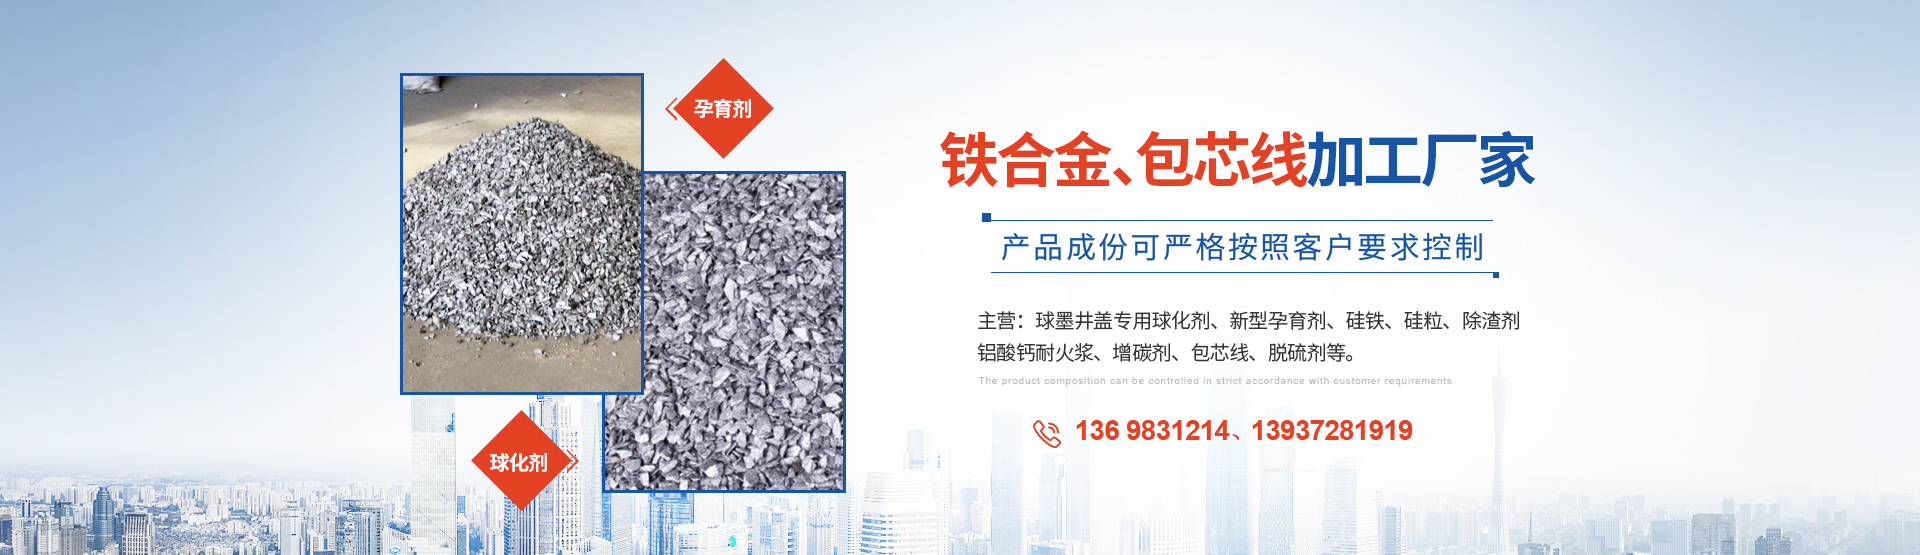 安阳县U乐国际铸造材料科技有限公司